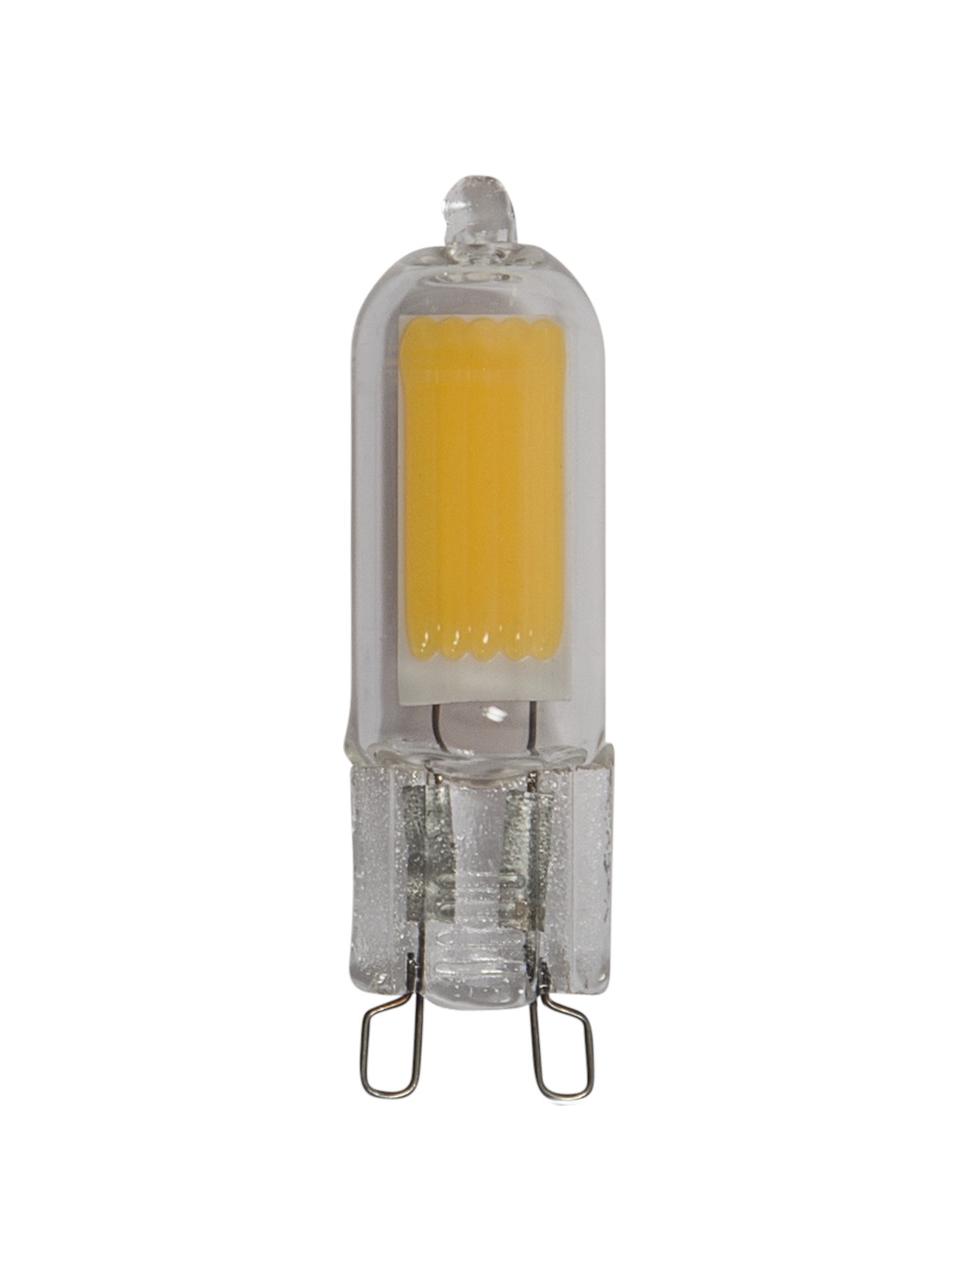 G9 Leuchtmittel, 200lm, warmweiss, 1 Stück, Leuchtmittelschirm: Glas, Leuchtmittelfassung: Glas, Transparent, Ø 1 x H 5 cm